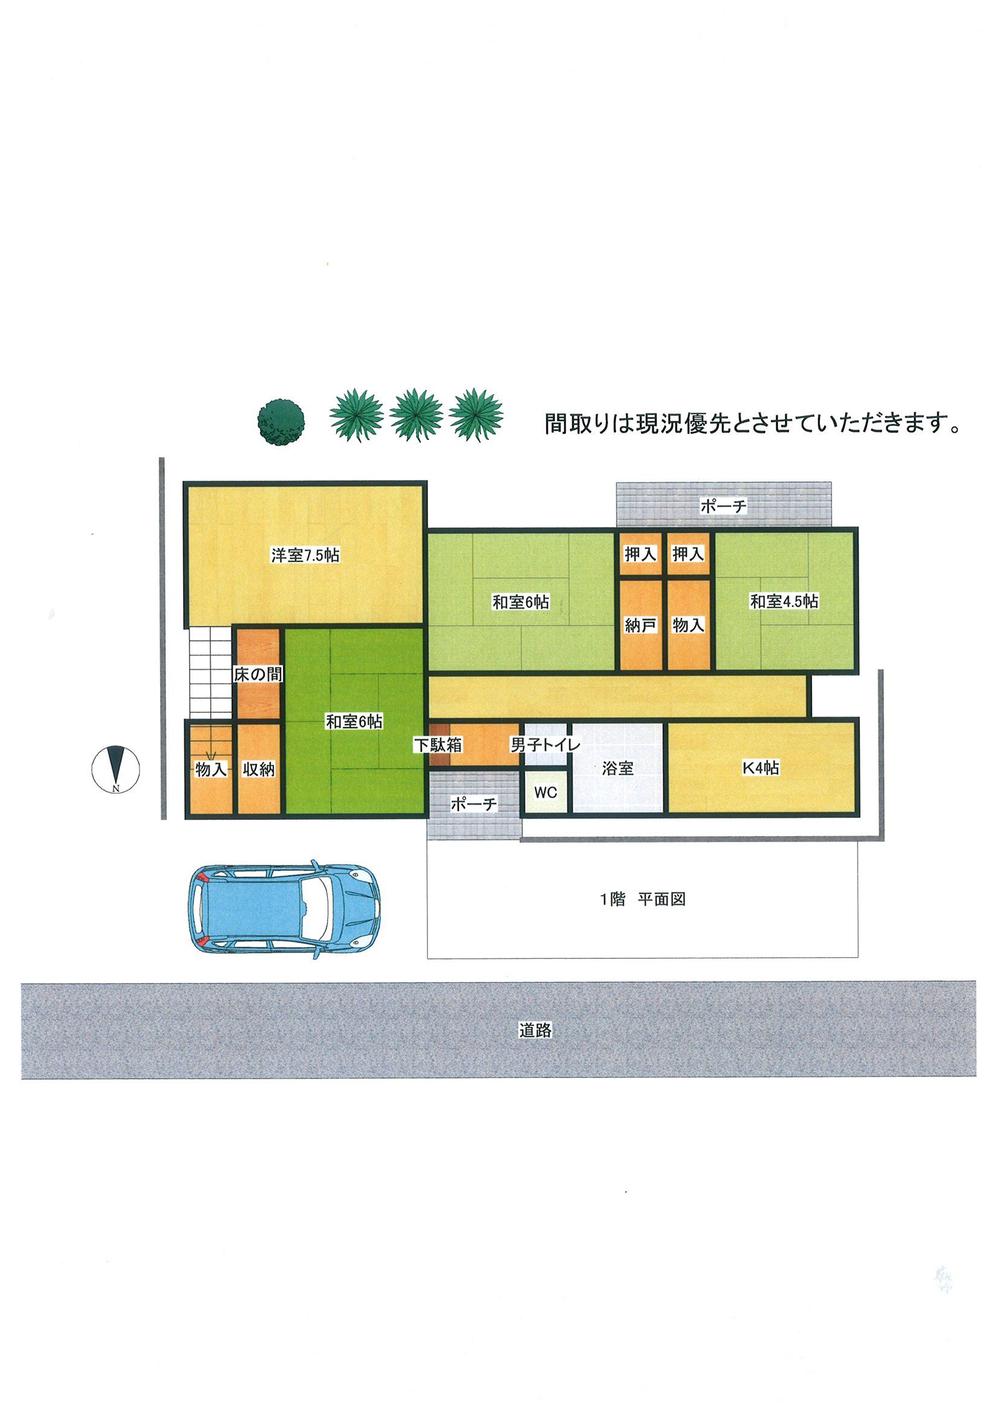 Floor plan. 5,980,000 yen, 5K, Land area 214.87 sq m , Building area 113 sq m 1 floor